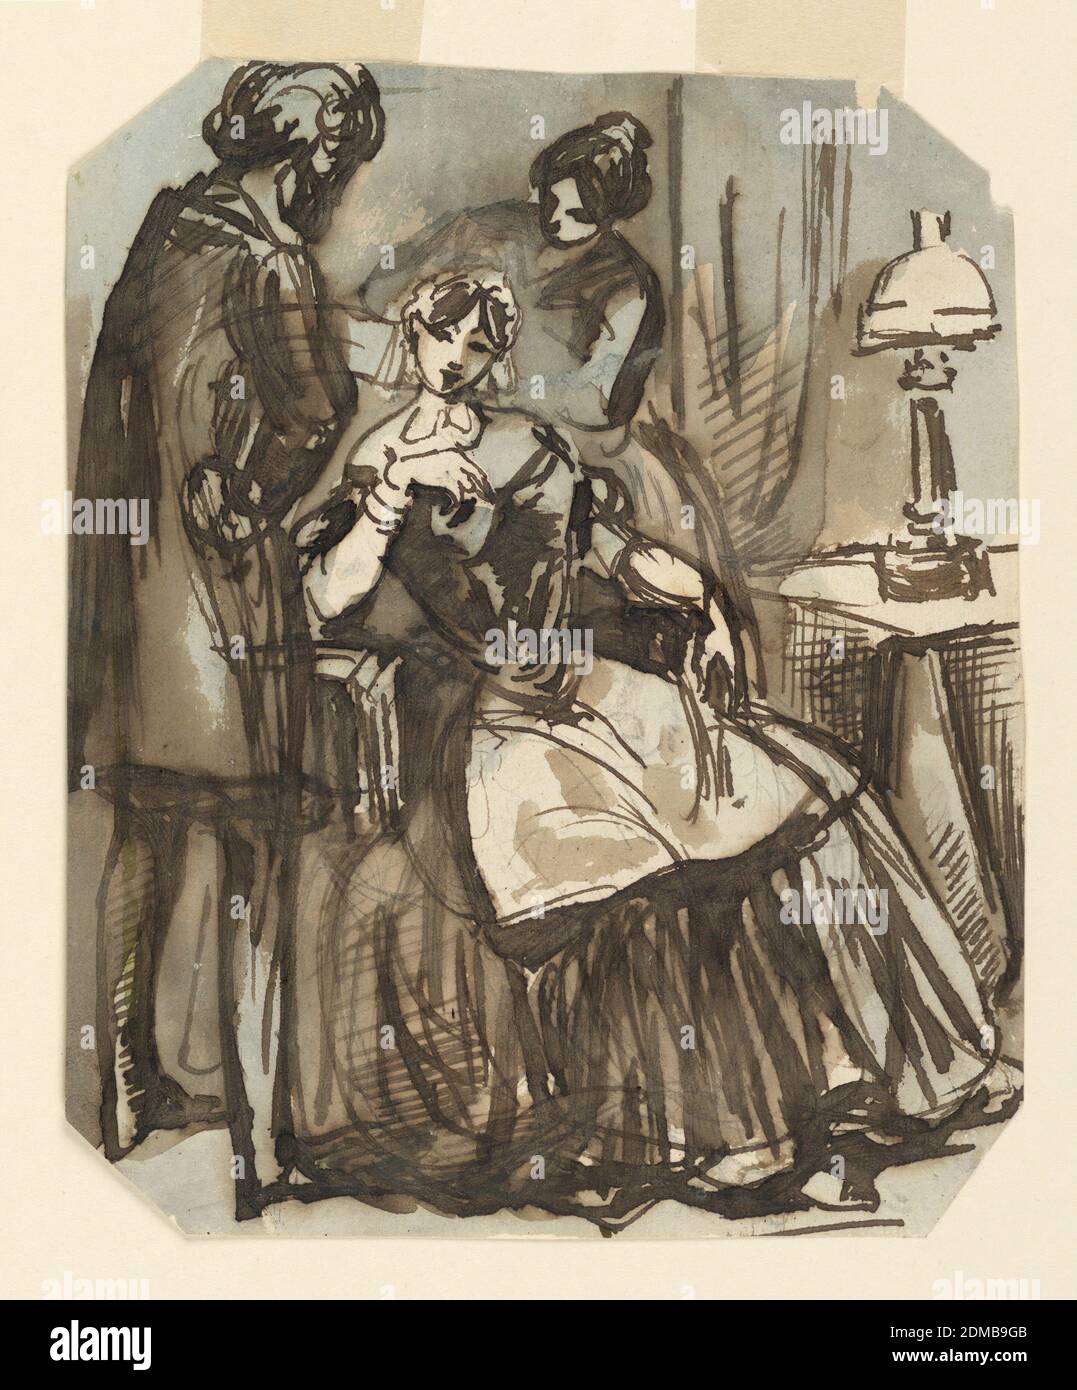 Finishing the Toilet, Constantin Guys, Französisch, 1802 – 1892, Stift und braune Tinte, Pinsel und blau und braun waschen auf Papier, Vertikal Rechteck, abgeschrägte Ecken. Eine Dame sitzt in einem Stuhl neben einem Tisch, auf dem eine beleuchtete Lampe ist. Sie trägt einen vollen Rock, eine Schürze und eine Mütze auf ihrem Kopf. Links ist ein männlicher Friseur in einem Kittel und rechts hinter ihr eine Magd, die beide ihre Haare arrangiert., Frankreich, ca. 1858, Figuren, Zeichnung Stockfoto